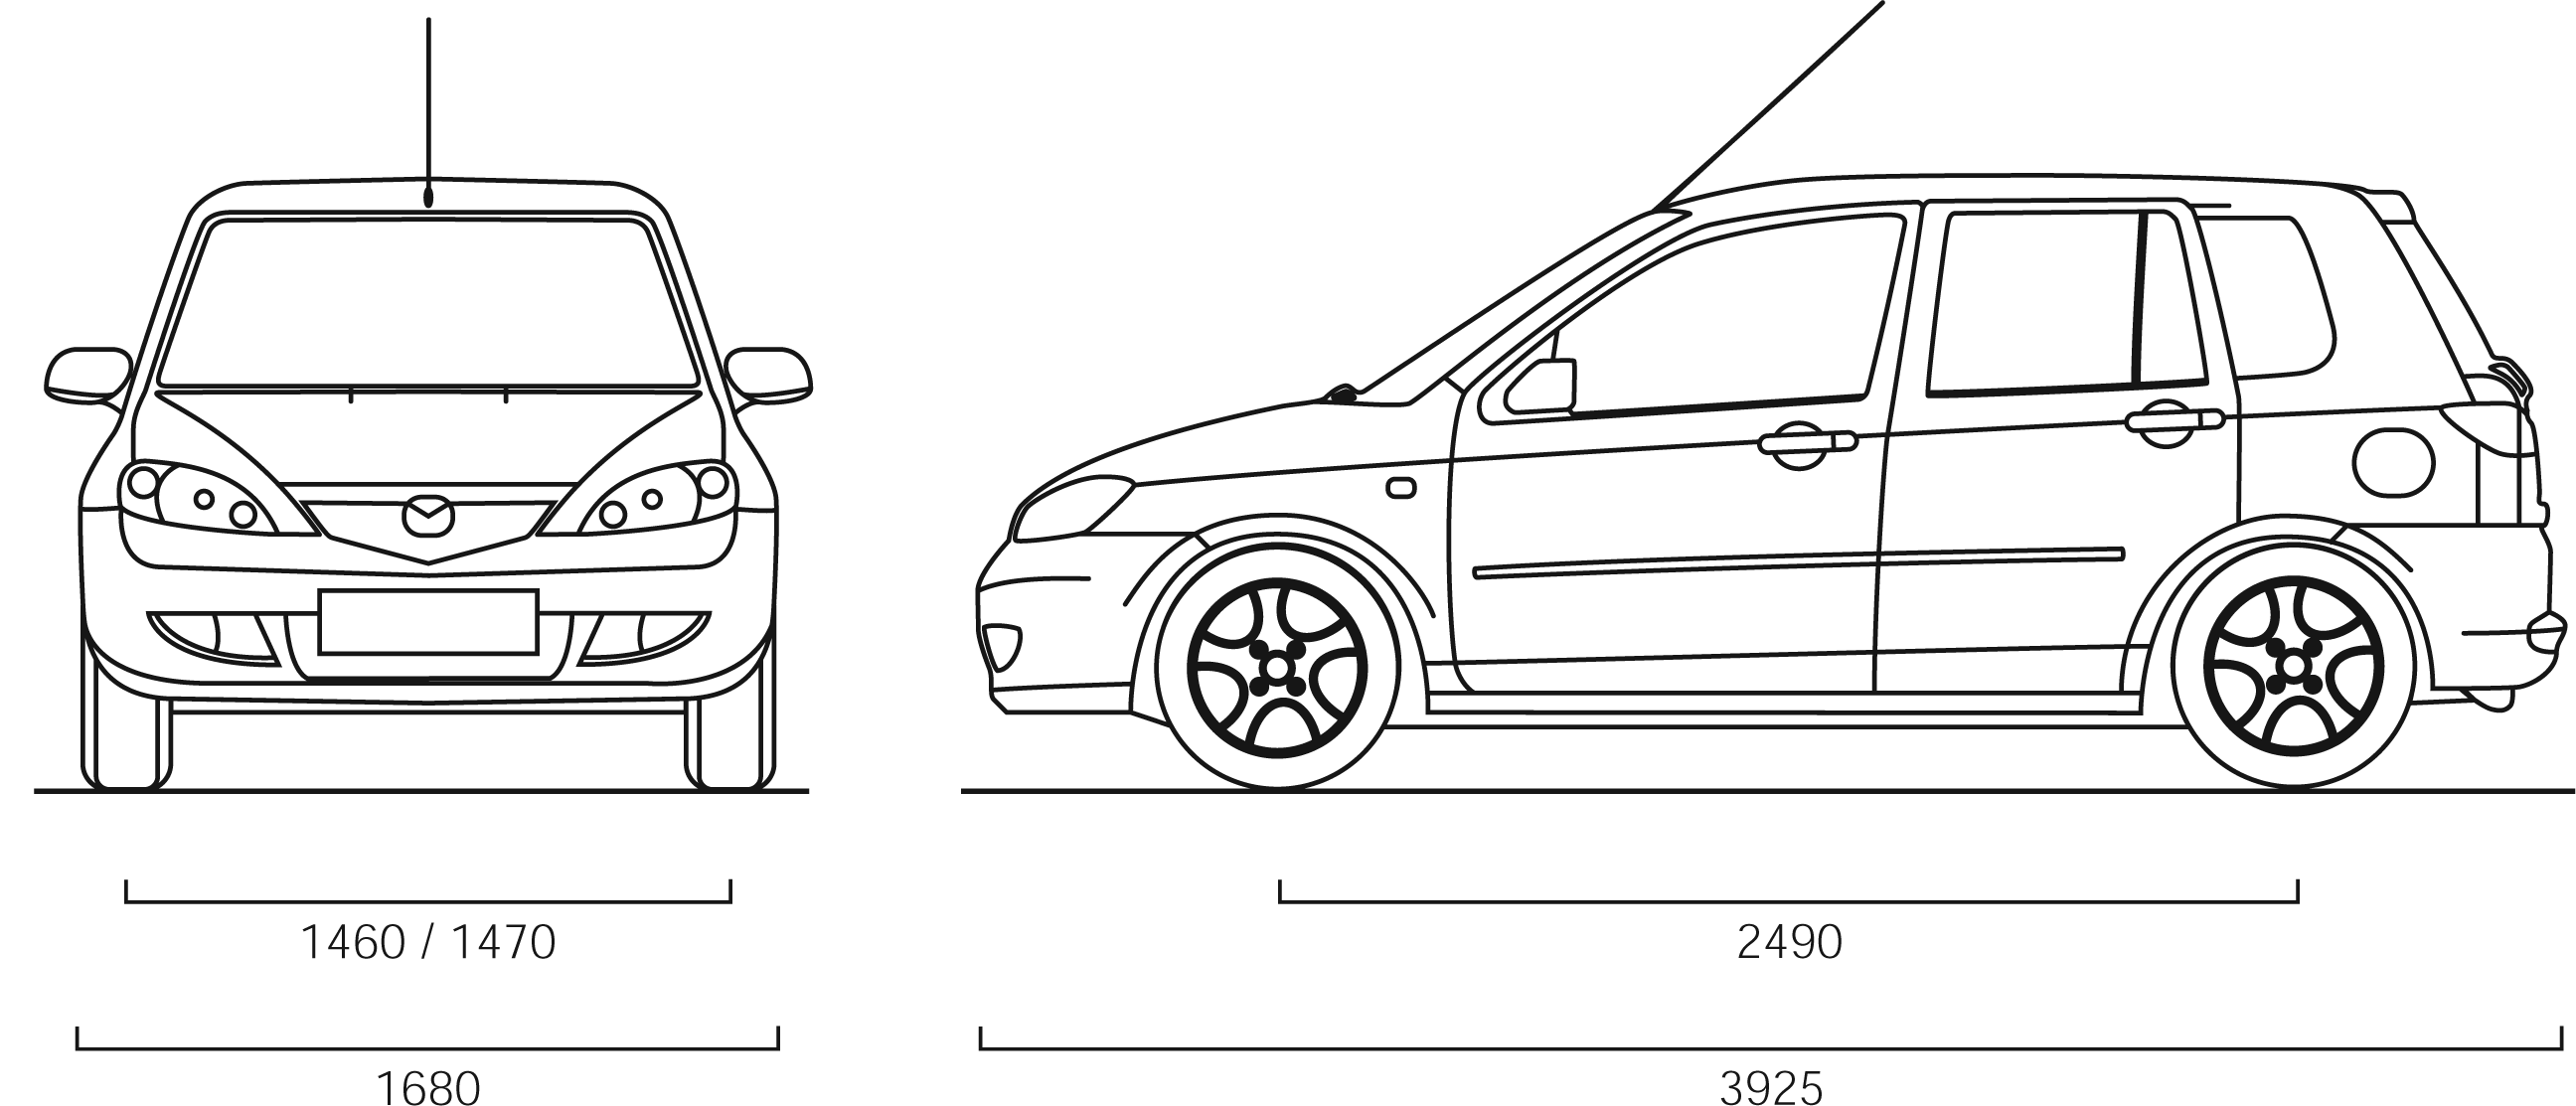 2007 Mazda 2 Hatchback blueprints free - Outlines